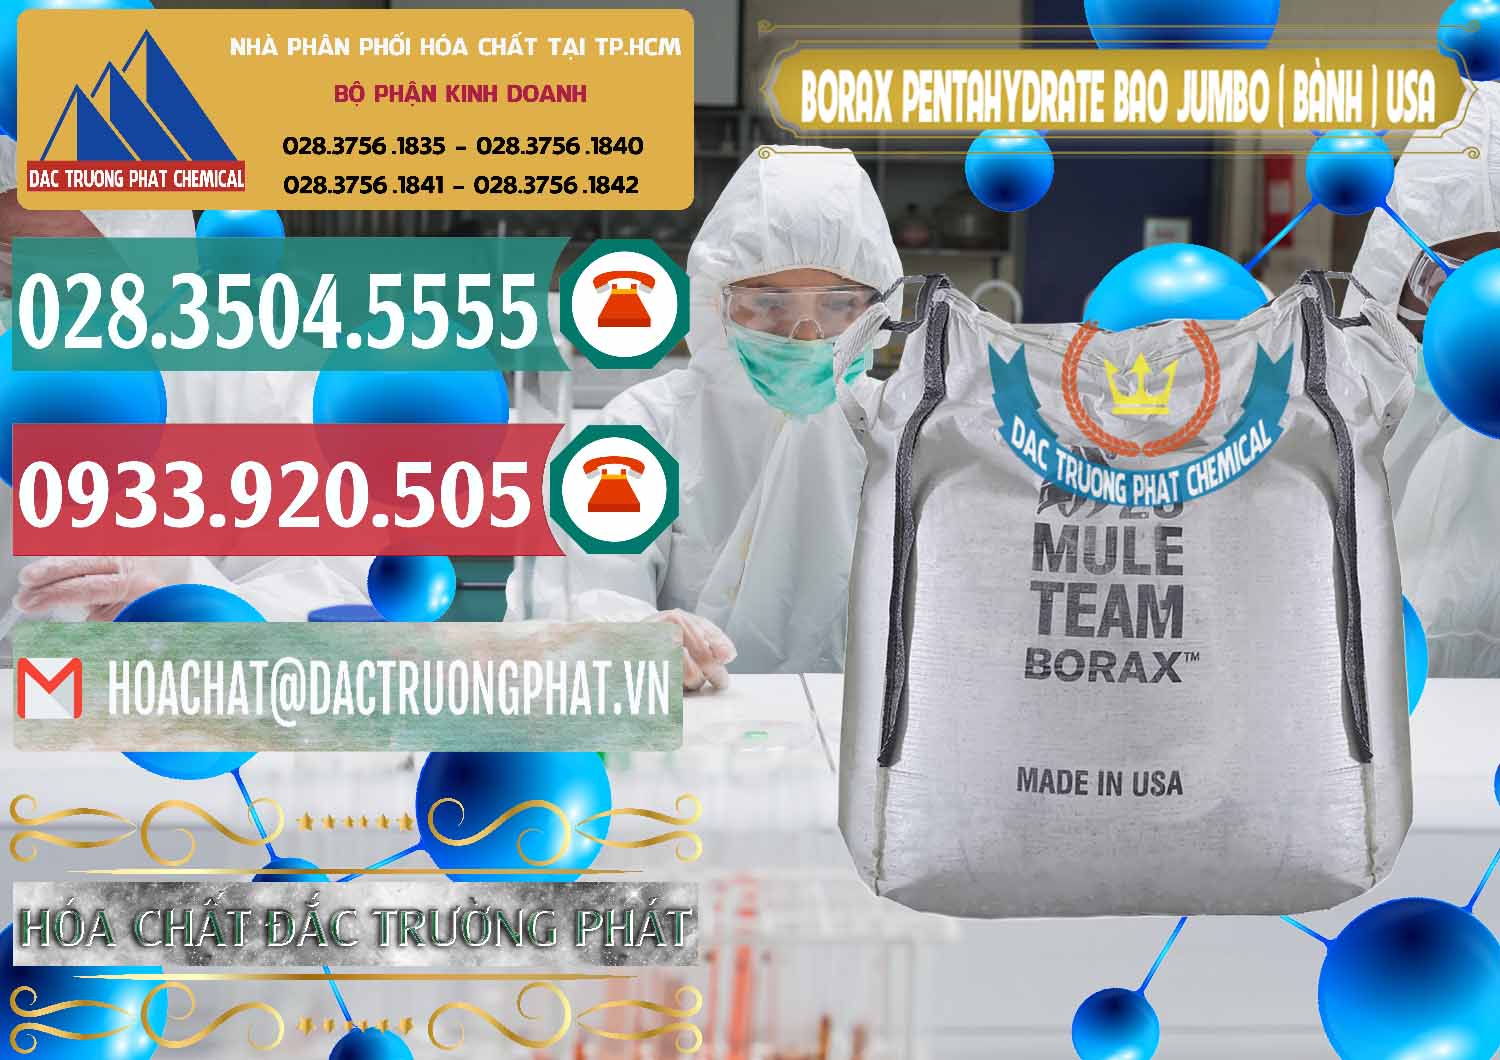 Công ty bán và cung cấp Borax Pentahydrate Bao Jumbo ( Bành ) Mule 20 Team Mỹ Usa - 0278 - Bán _ phân phối hóa chất tại TP.HCM - muabanhoachat.vn